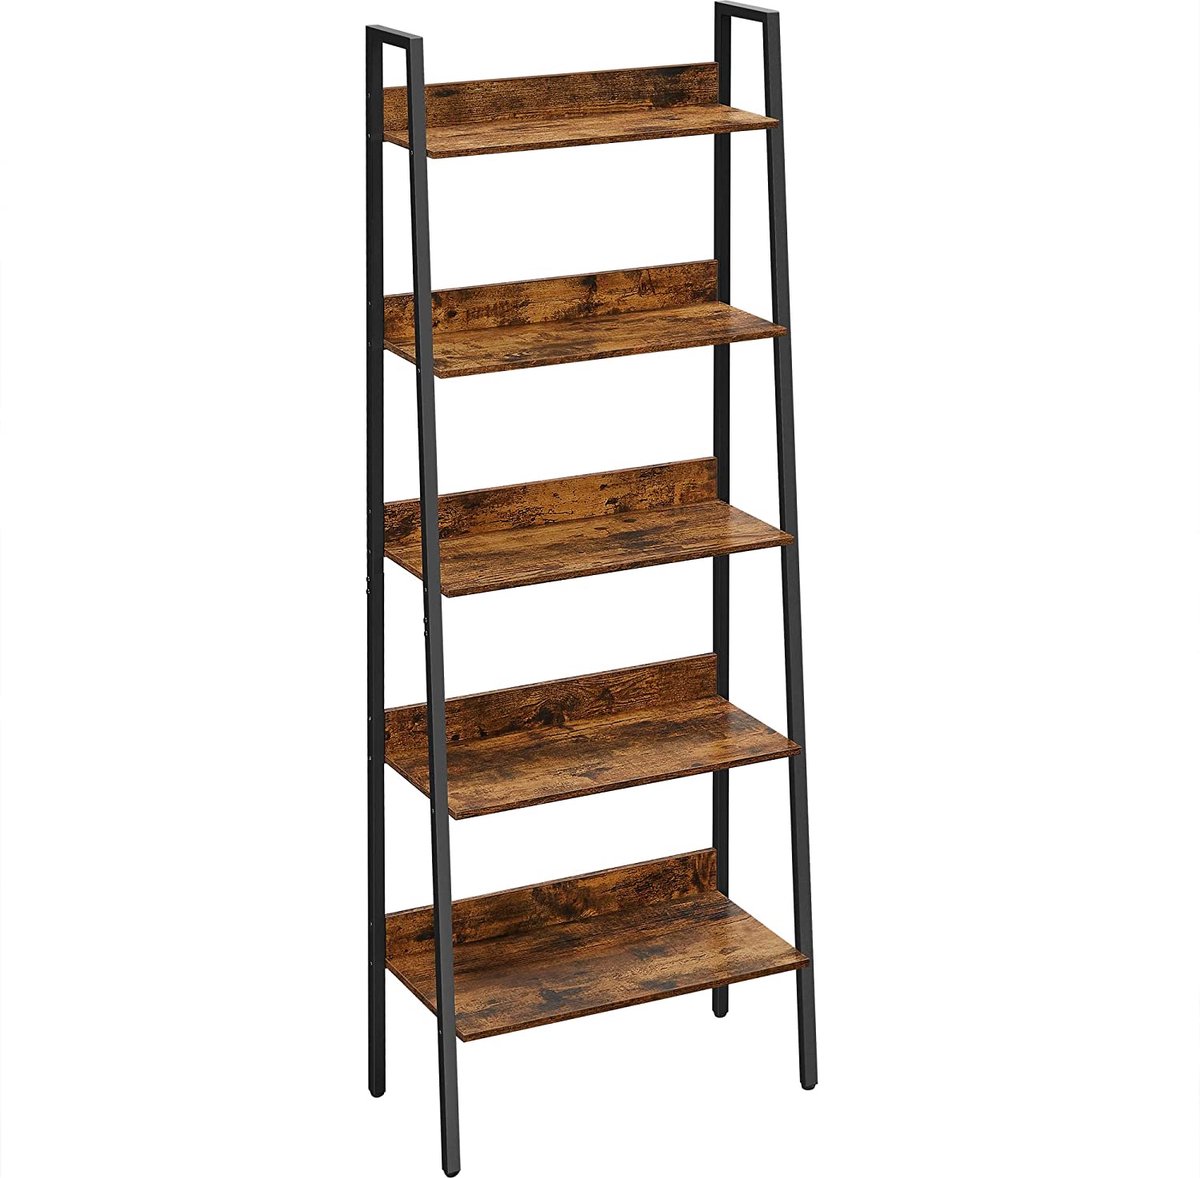 LIVINGSIGNS boekenkast, ladderplank met 5 planken, open, staande plank, smal, voor woonkamer, slaapkamer, keuken, kantoor, metalen frame, industrieel design, vintage bruin-zwart LLS067B01